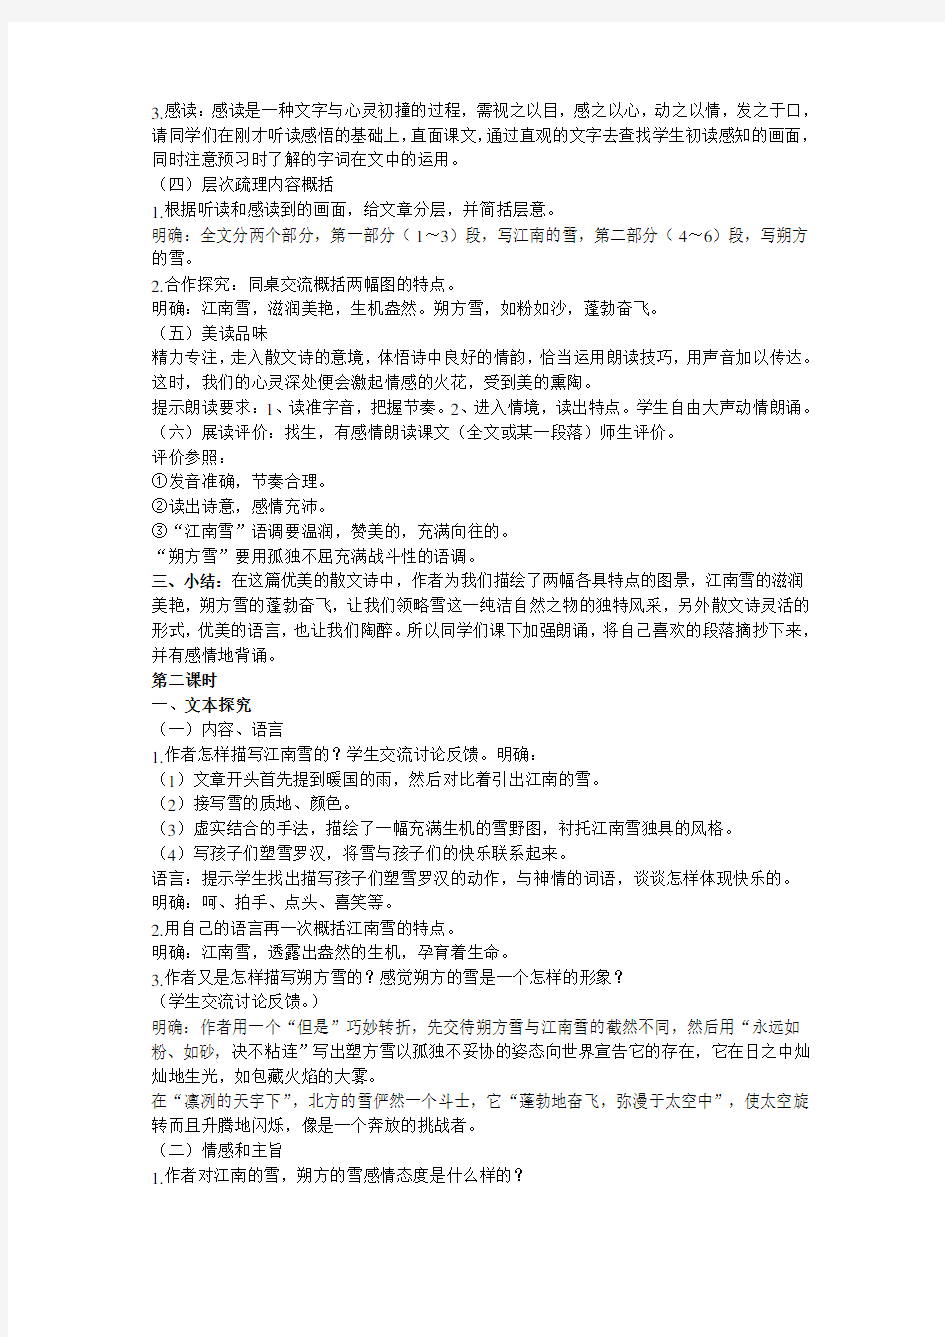 人教版初中语文课文《雪》作者鲁迅教学设计